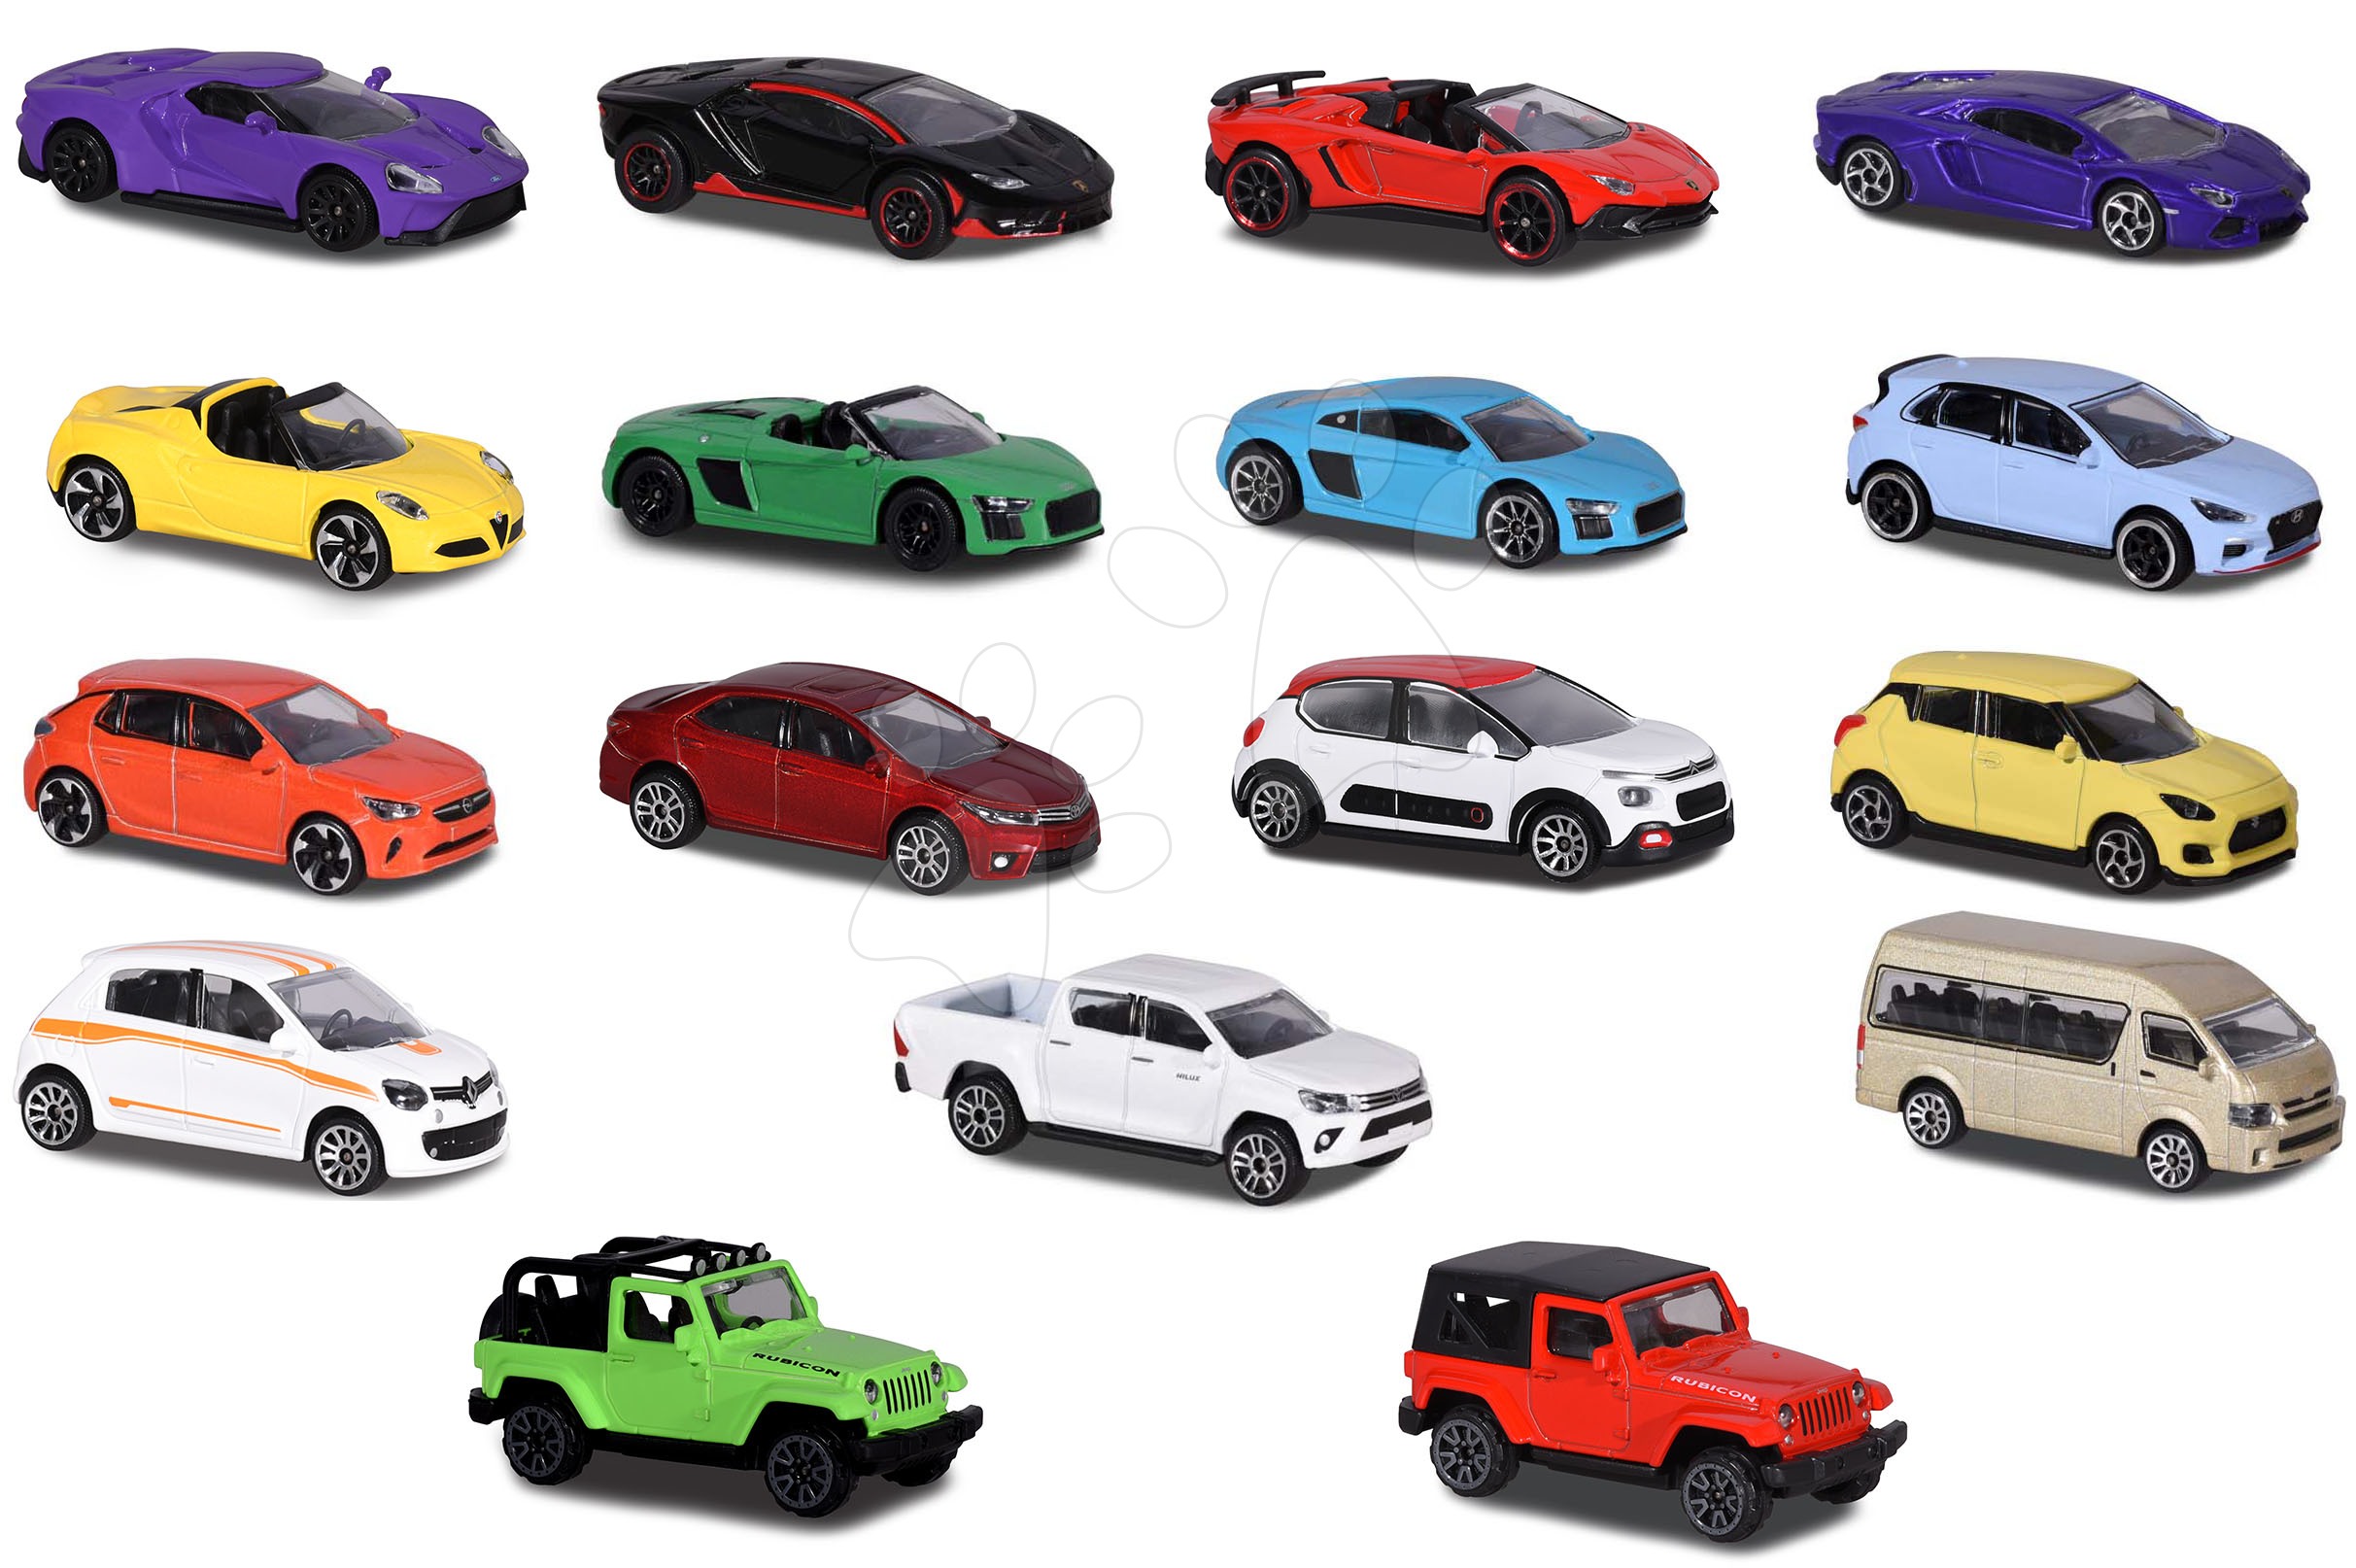 Autíčko mestské Street Cars Majorette 18 rôznych druhov 7,5 cm dĺžka